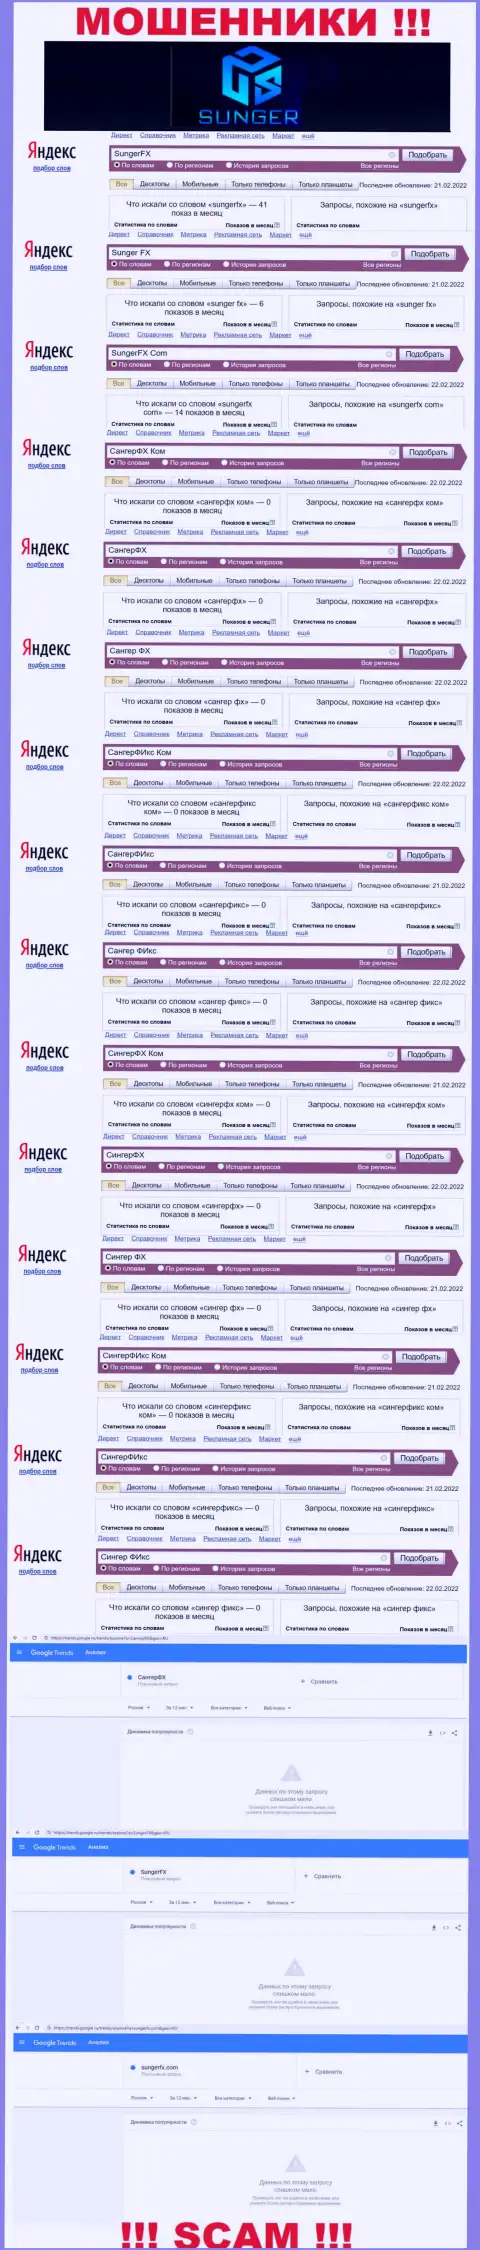 SungerFX - это ЛОХОТРОНЩИКИ, сколько раз искали в поисковиках глобальной internet сети указанную контору